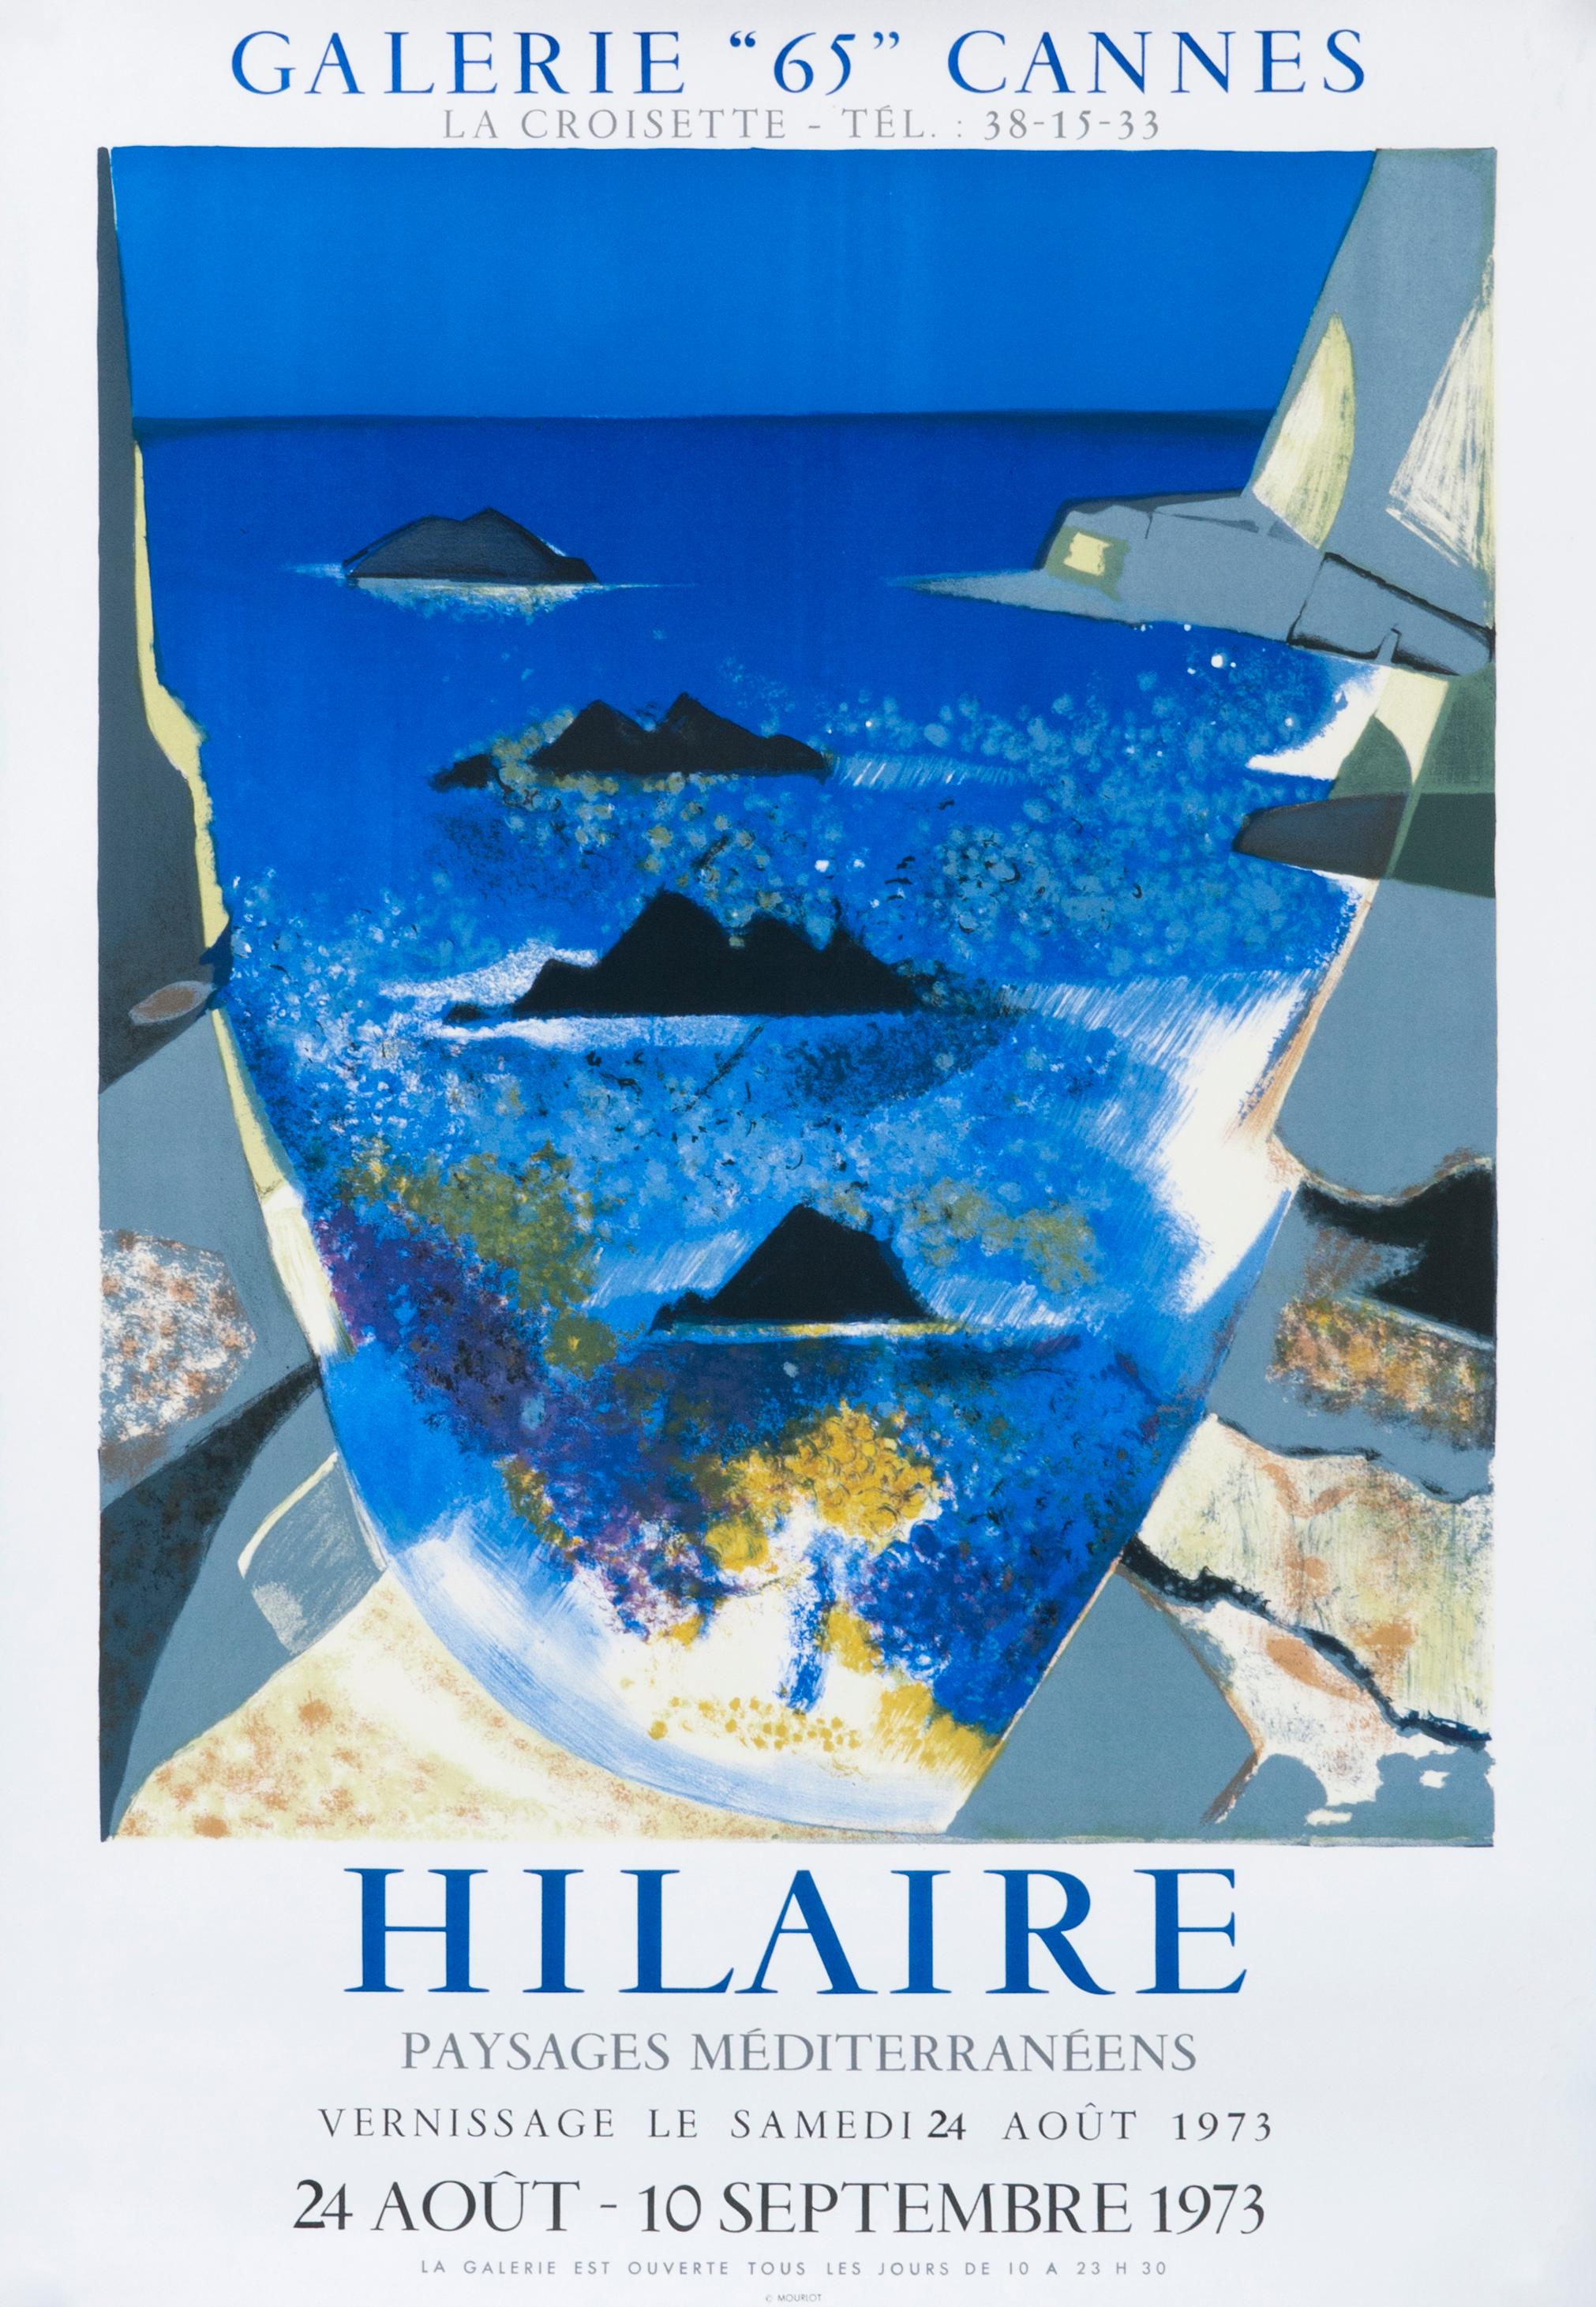 Camille Hilaire Landscape Print - "Hilaire - Paysages Mediterraneens - Cannes" Seascape Exhibition Poster